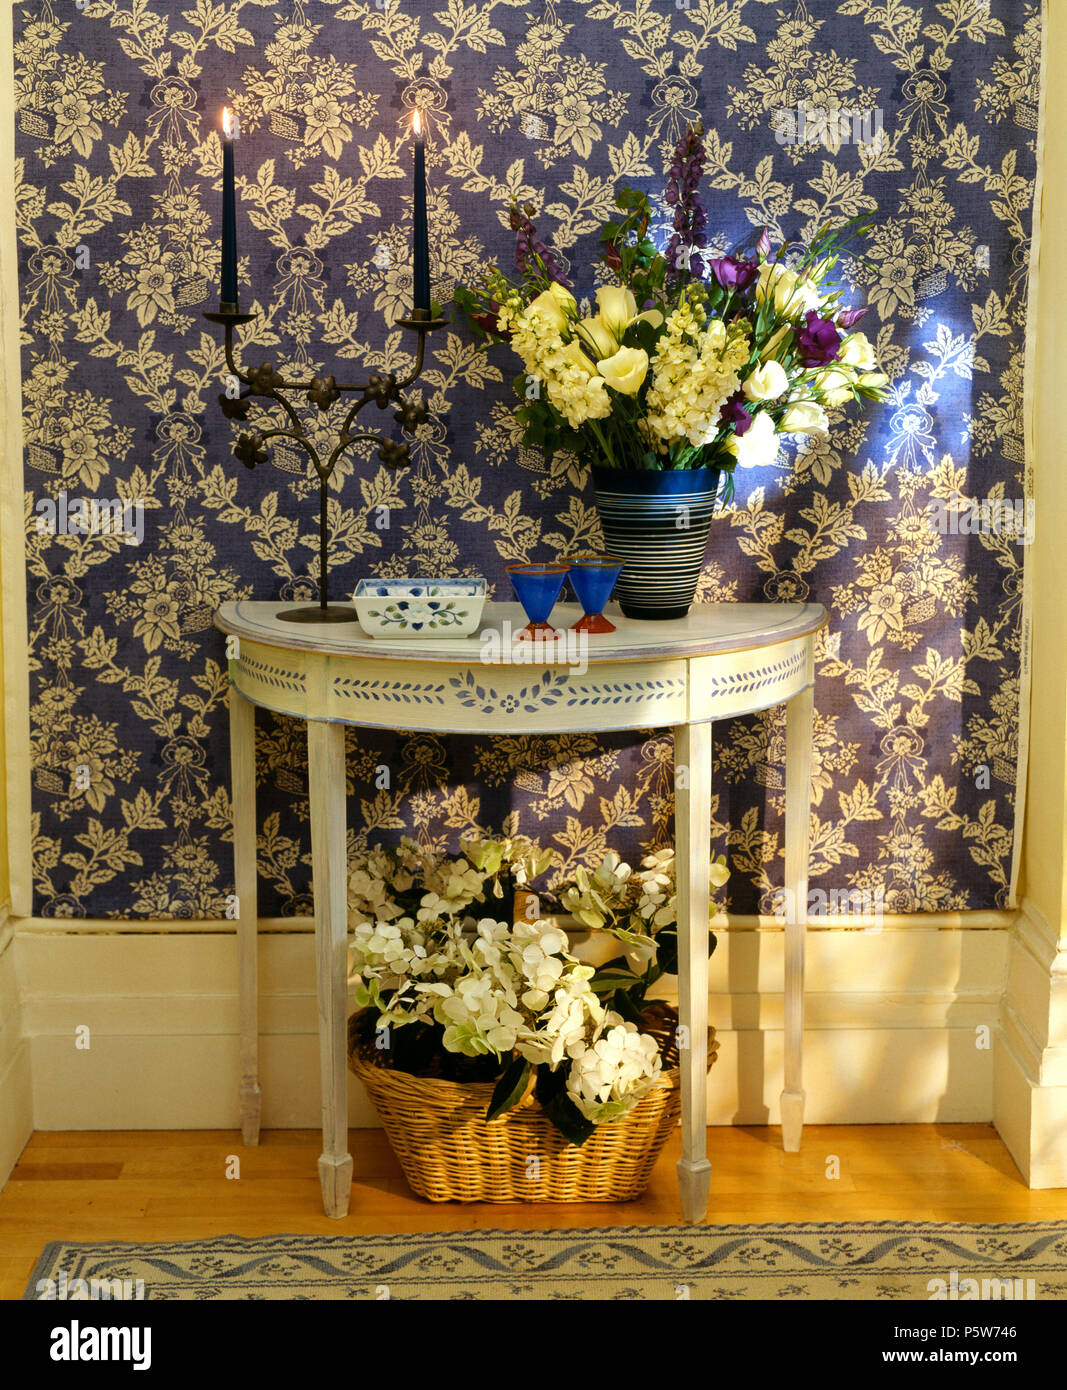 Blau + weiß tapeten in Halle mit Vase mit Blumen auf lackierten Konsole Tisch mit Schablone Design Stockfoto